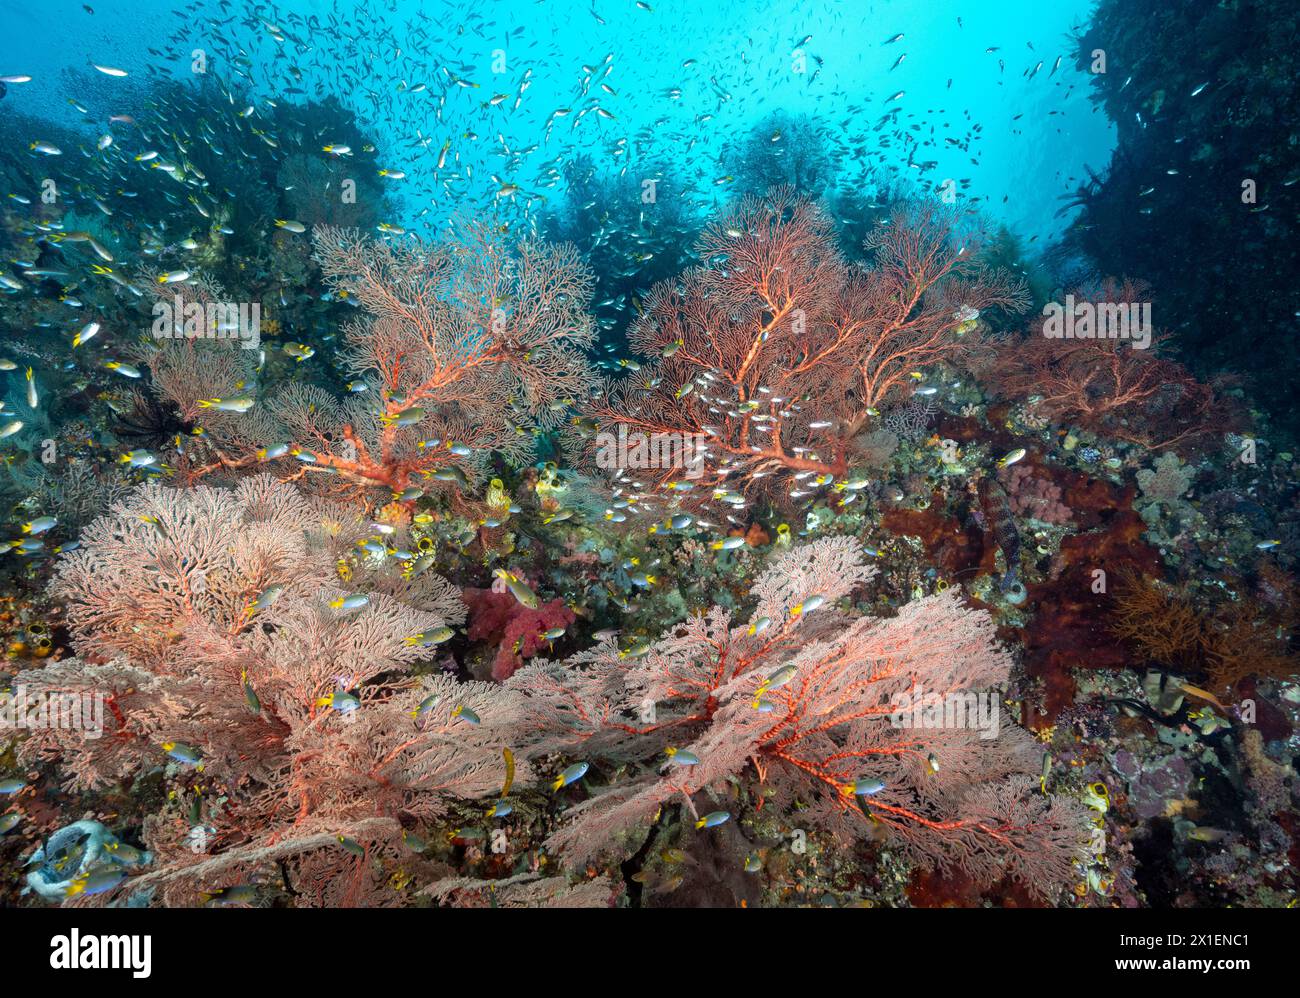 Récif coloré pittoresque avec des fans de mer géants et avec des poissons damsel à queue jaune, Neopomacentrus azysron, Raja Ampat Indonésie. Banque D'Images